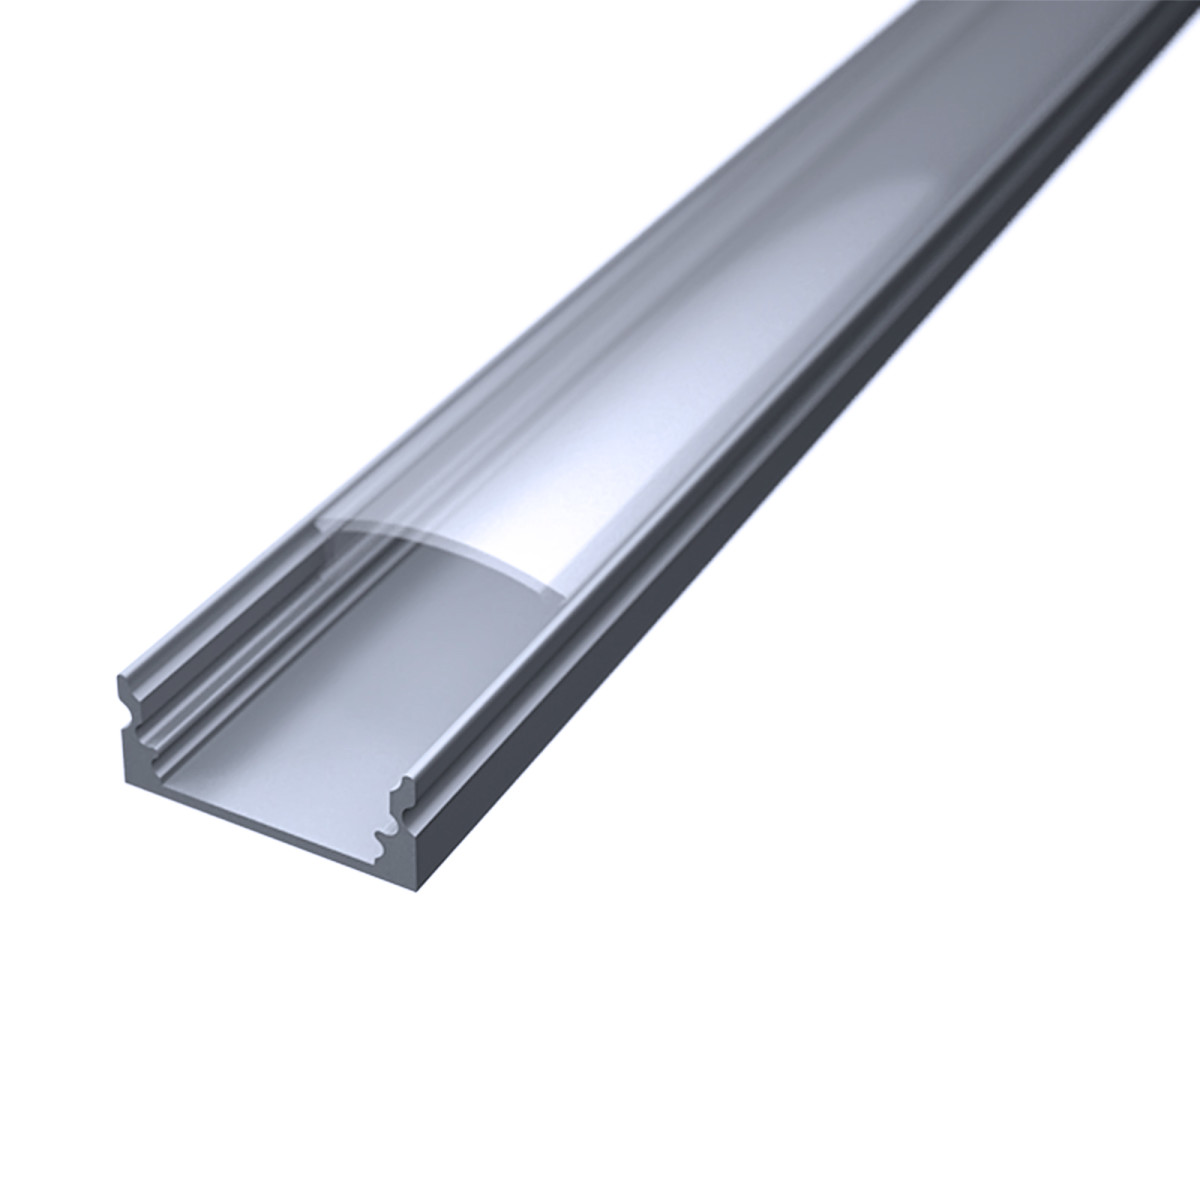 LED Flachprofil "Slim-Line" | Abdeckung transparent | Zuschnitt auf 65cm |